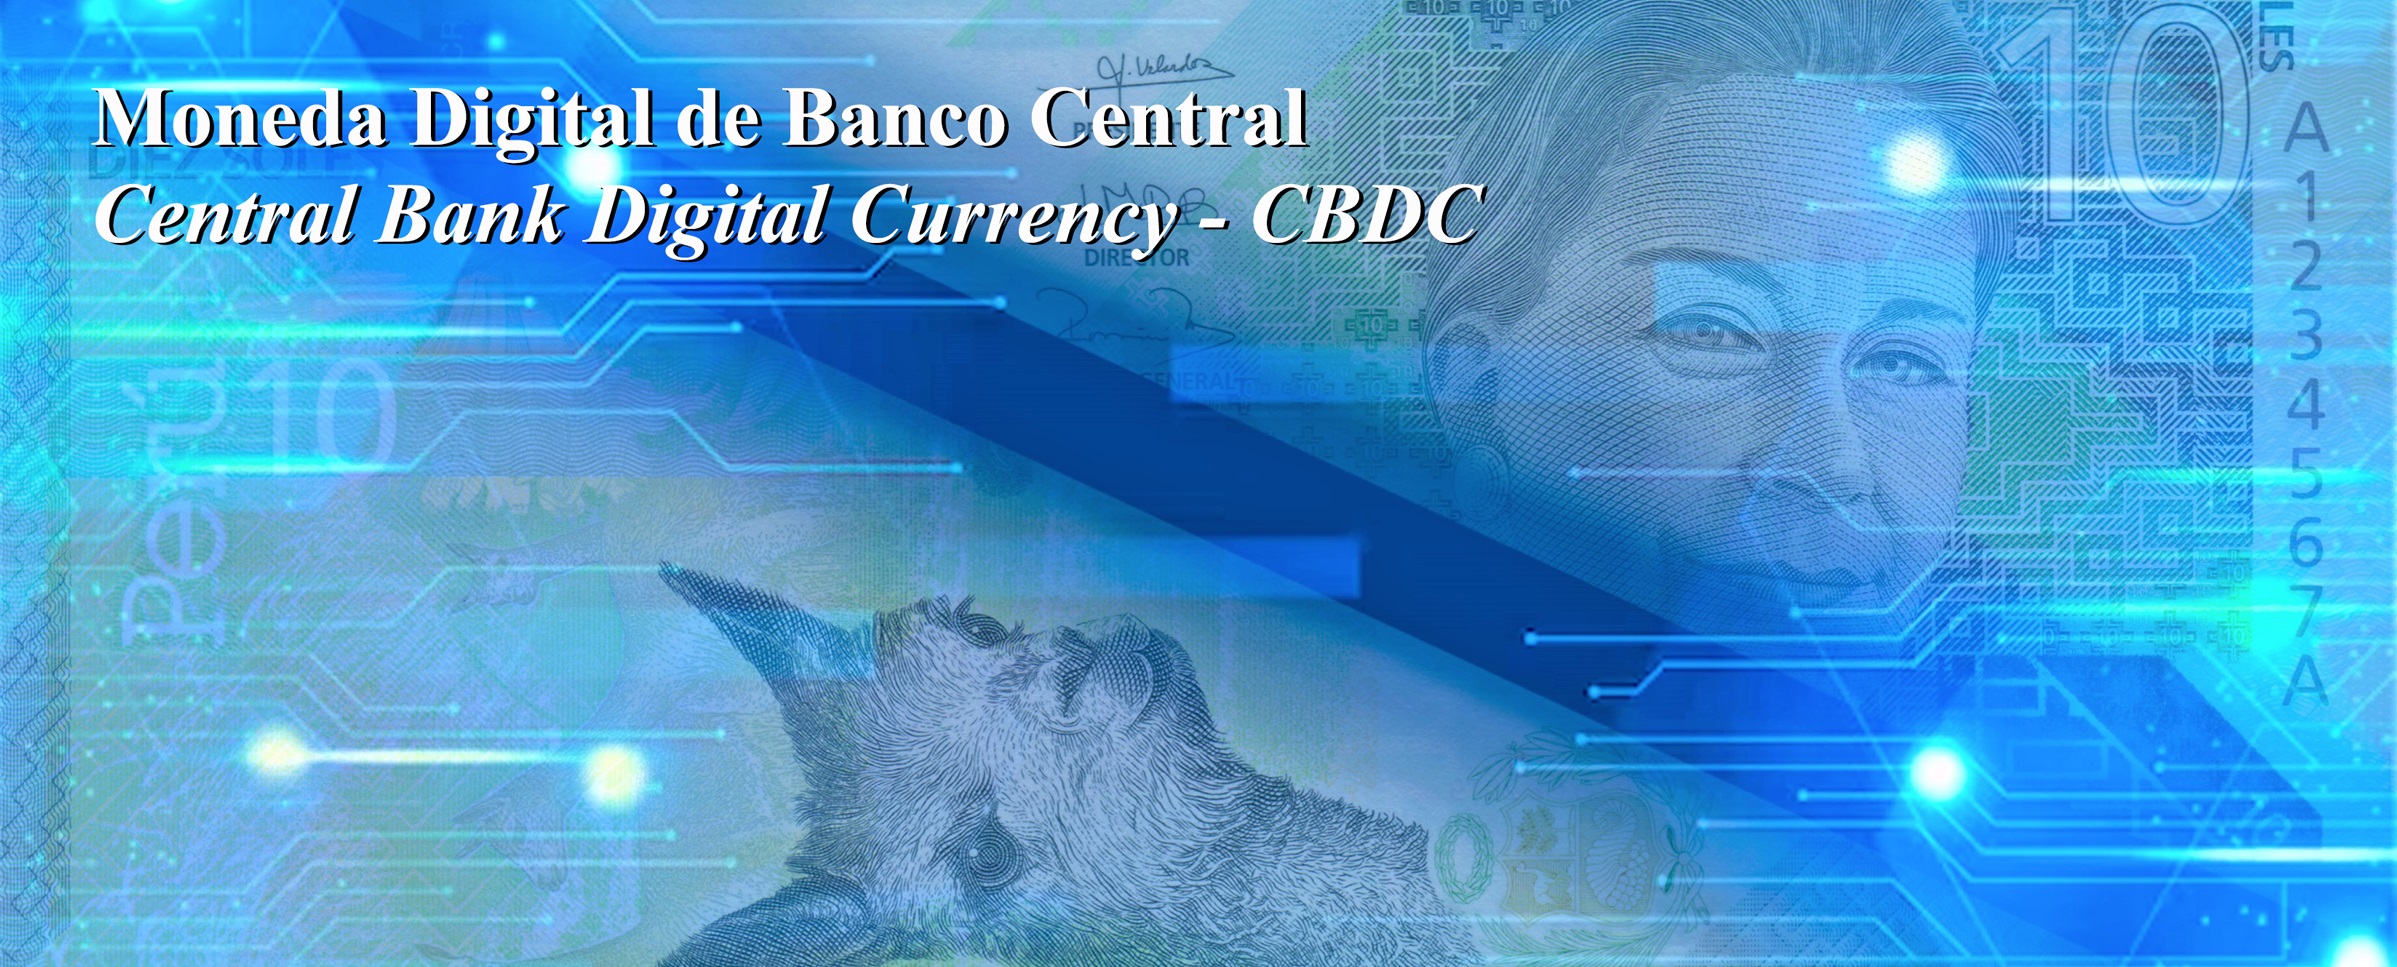 Moneda Digital de Banco Central